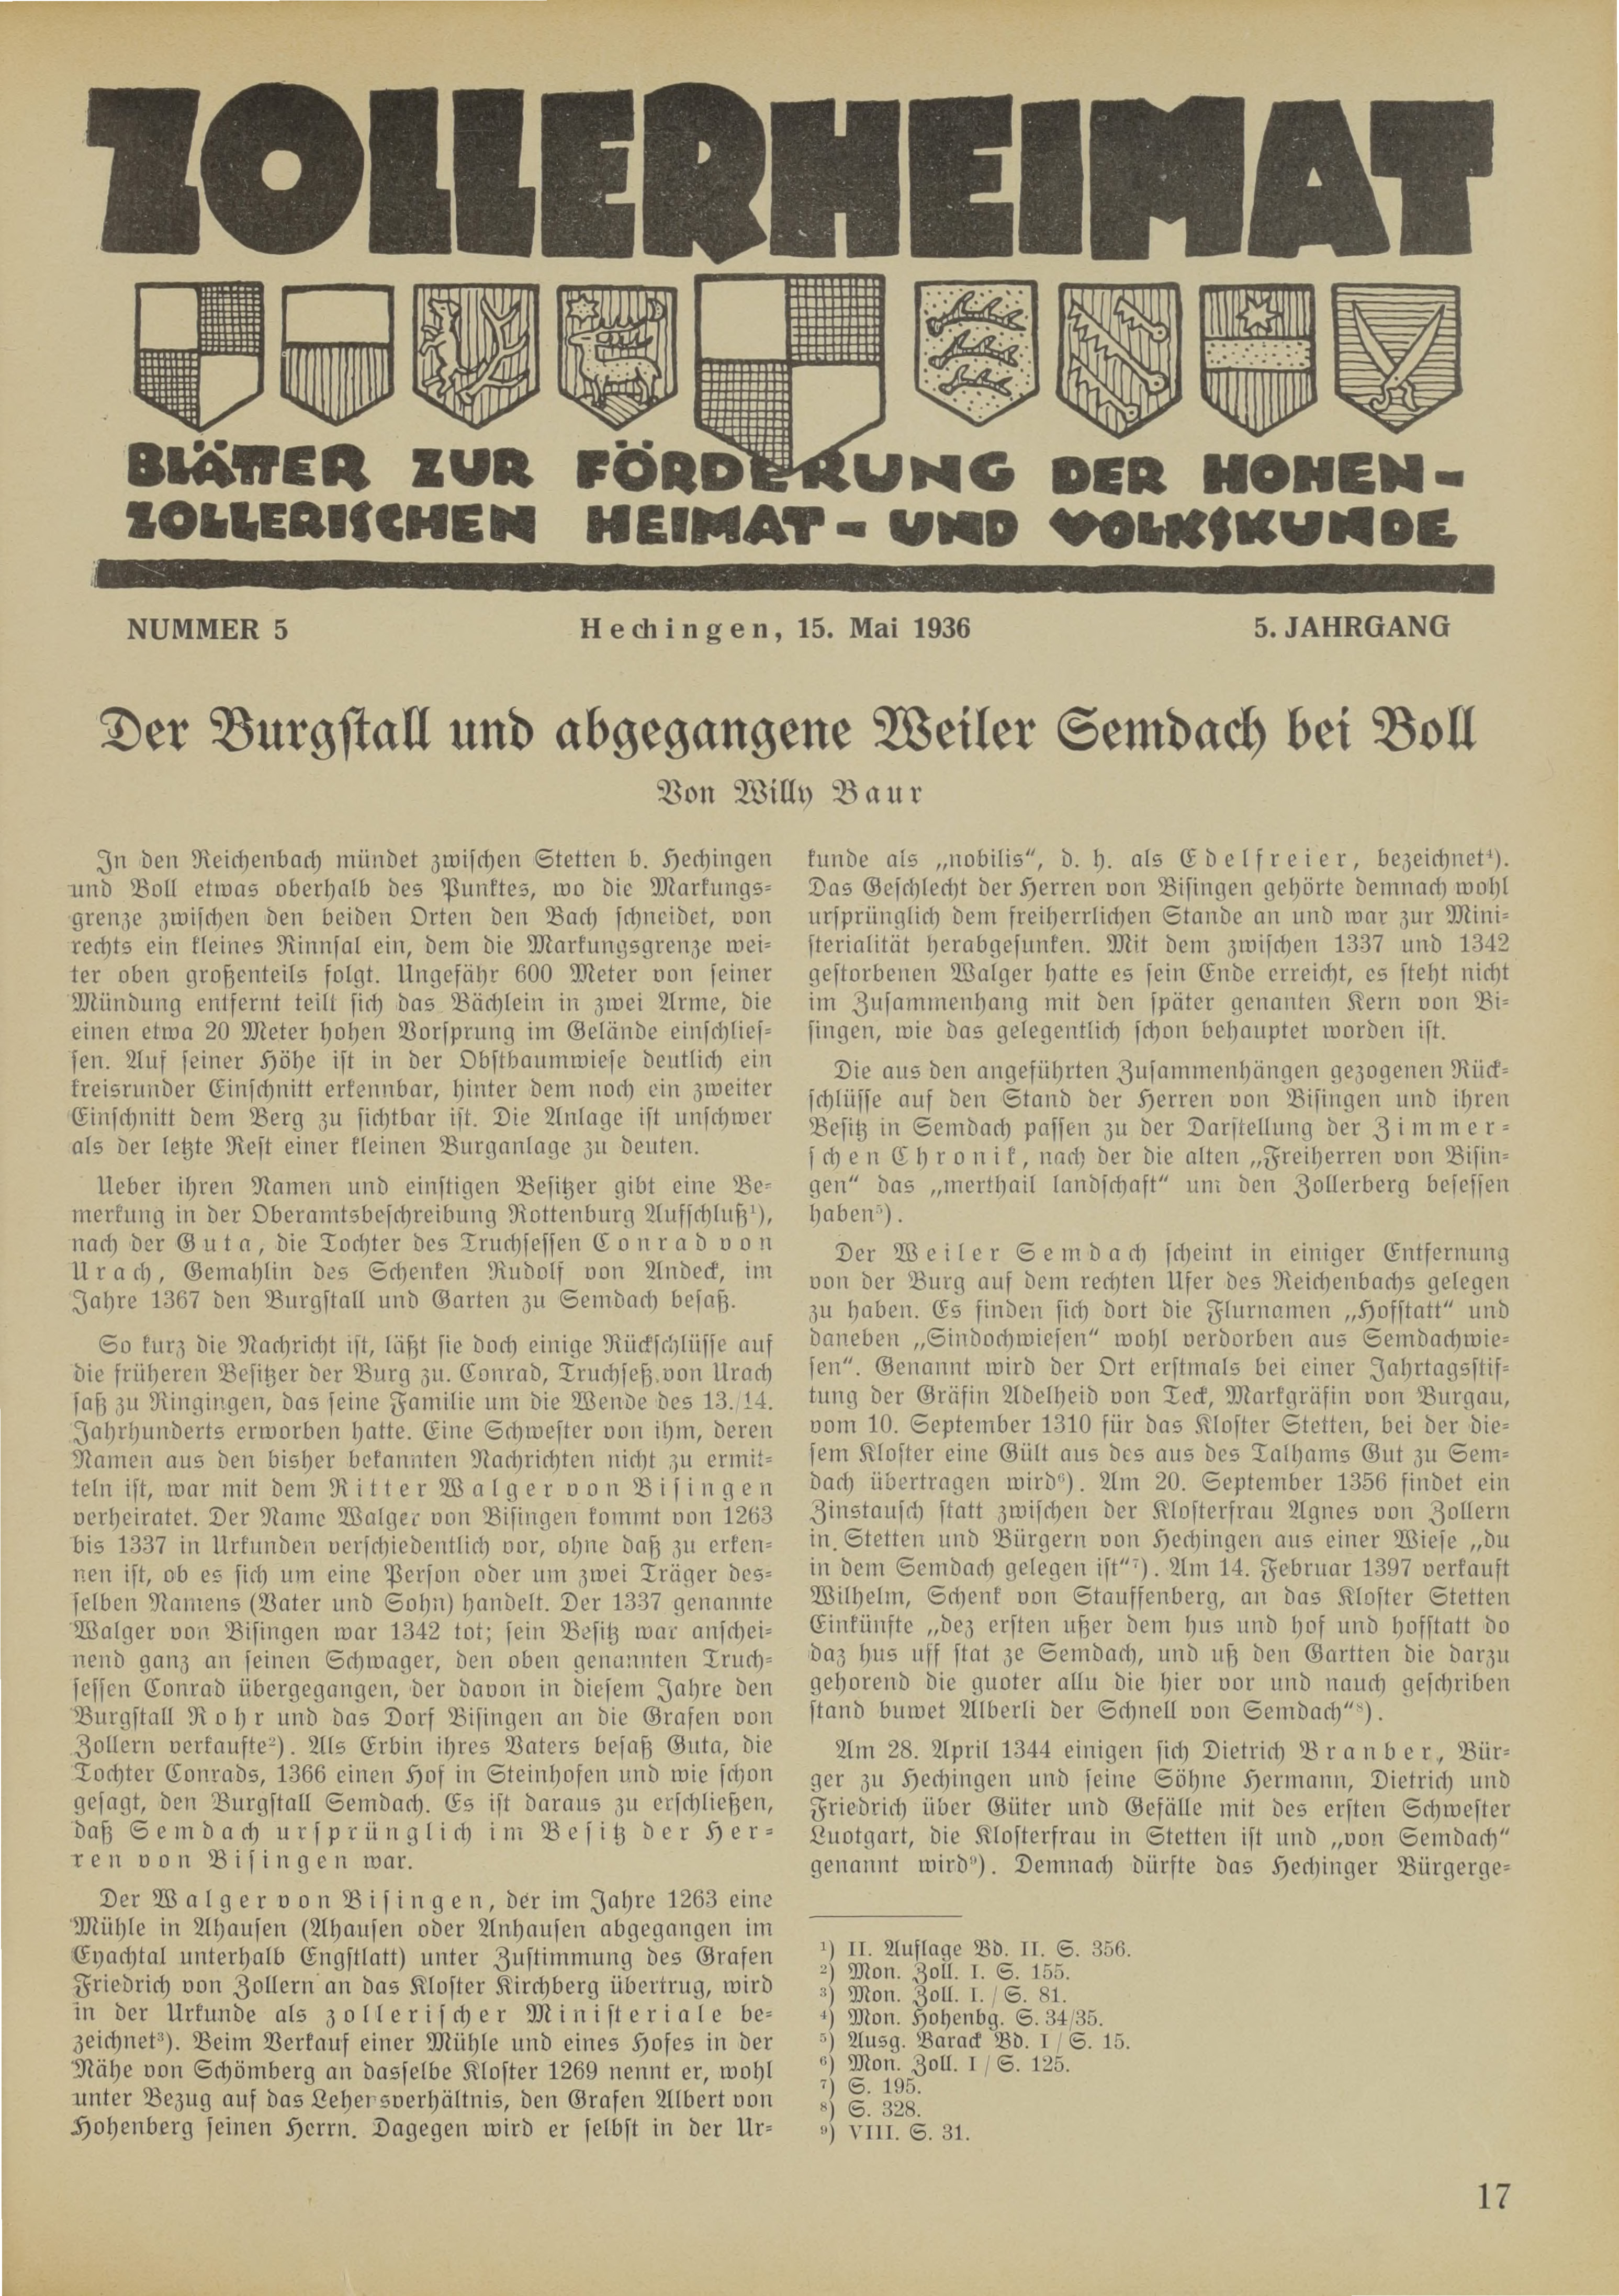                     Ansehen Bd. 5 Nr. 5 (1936): Zollerheimat
                